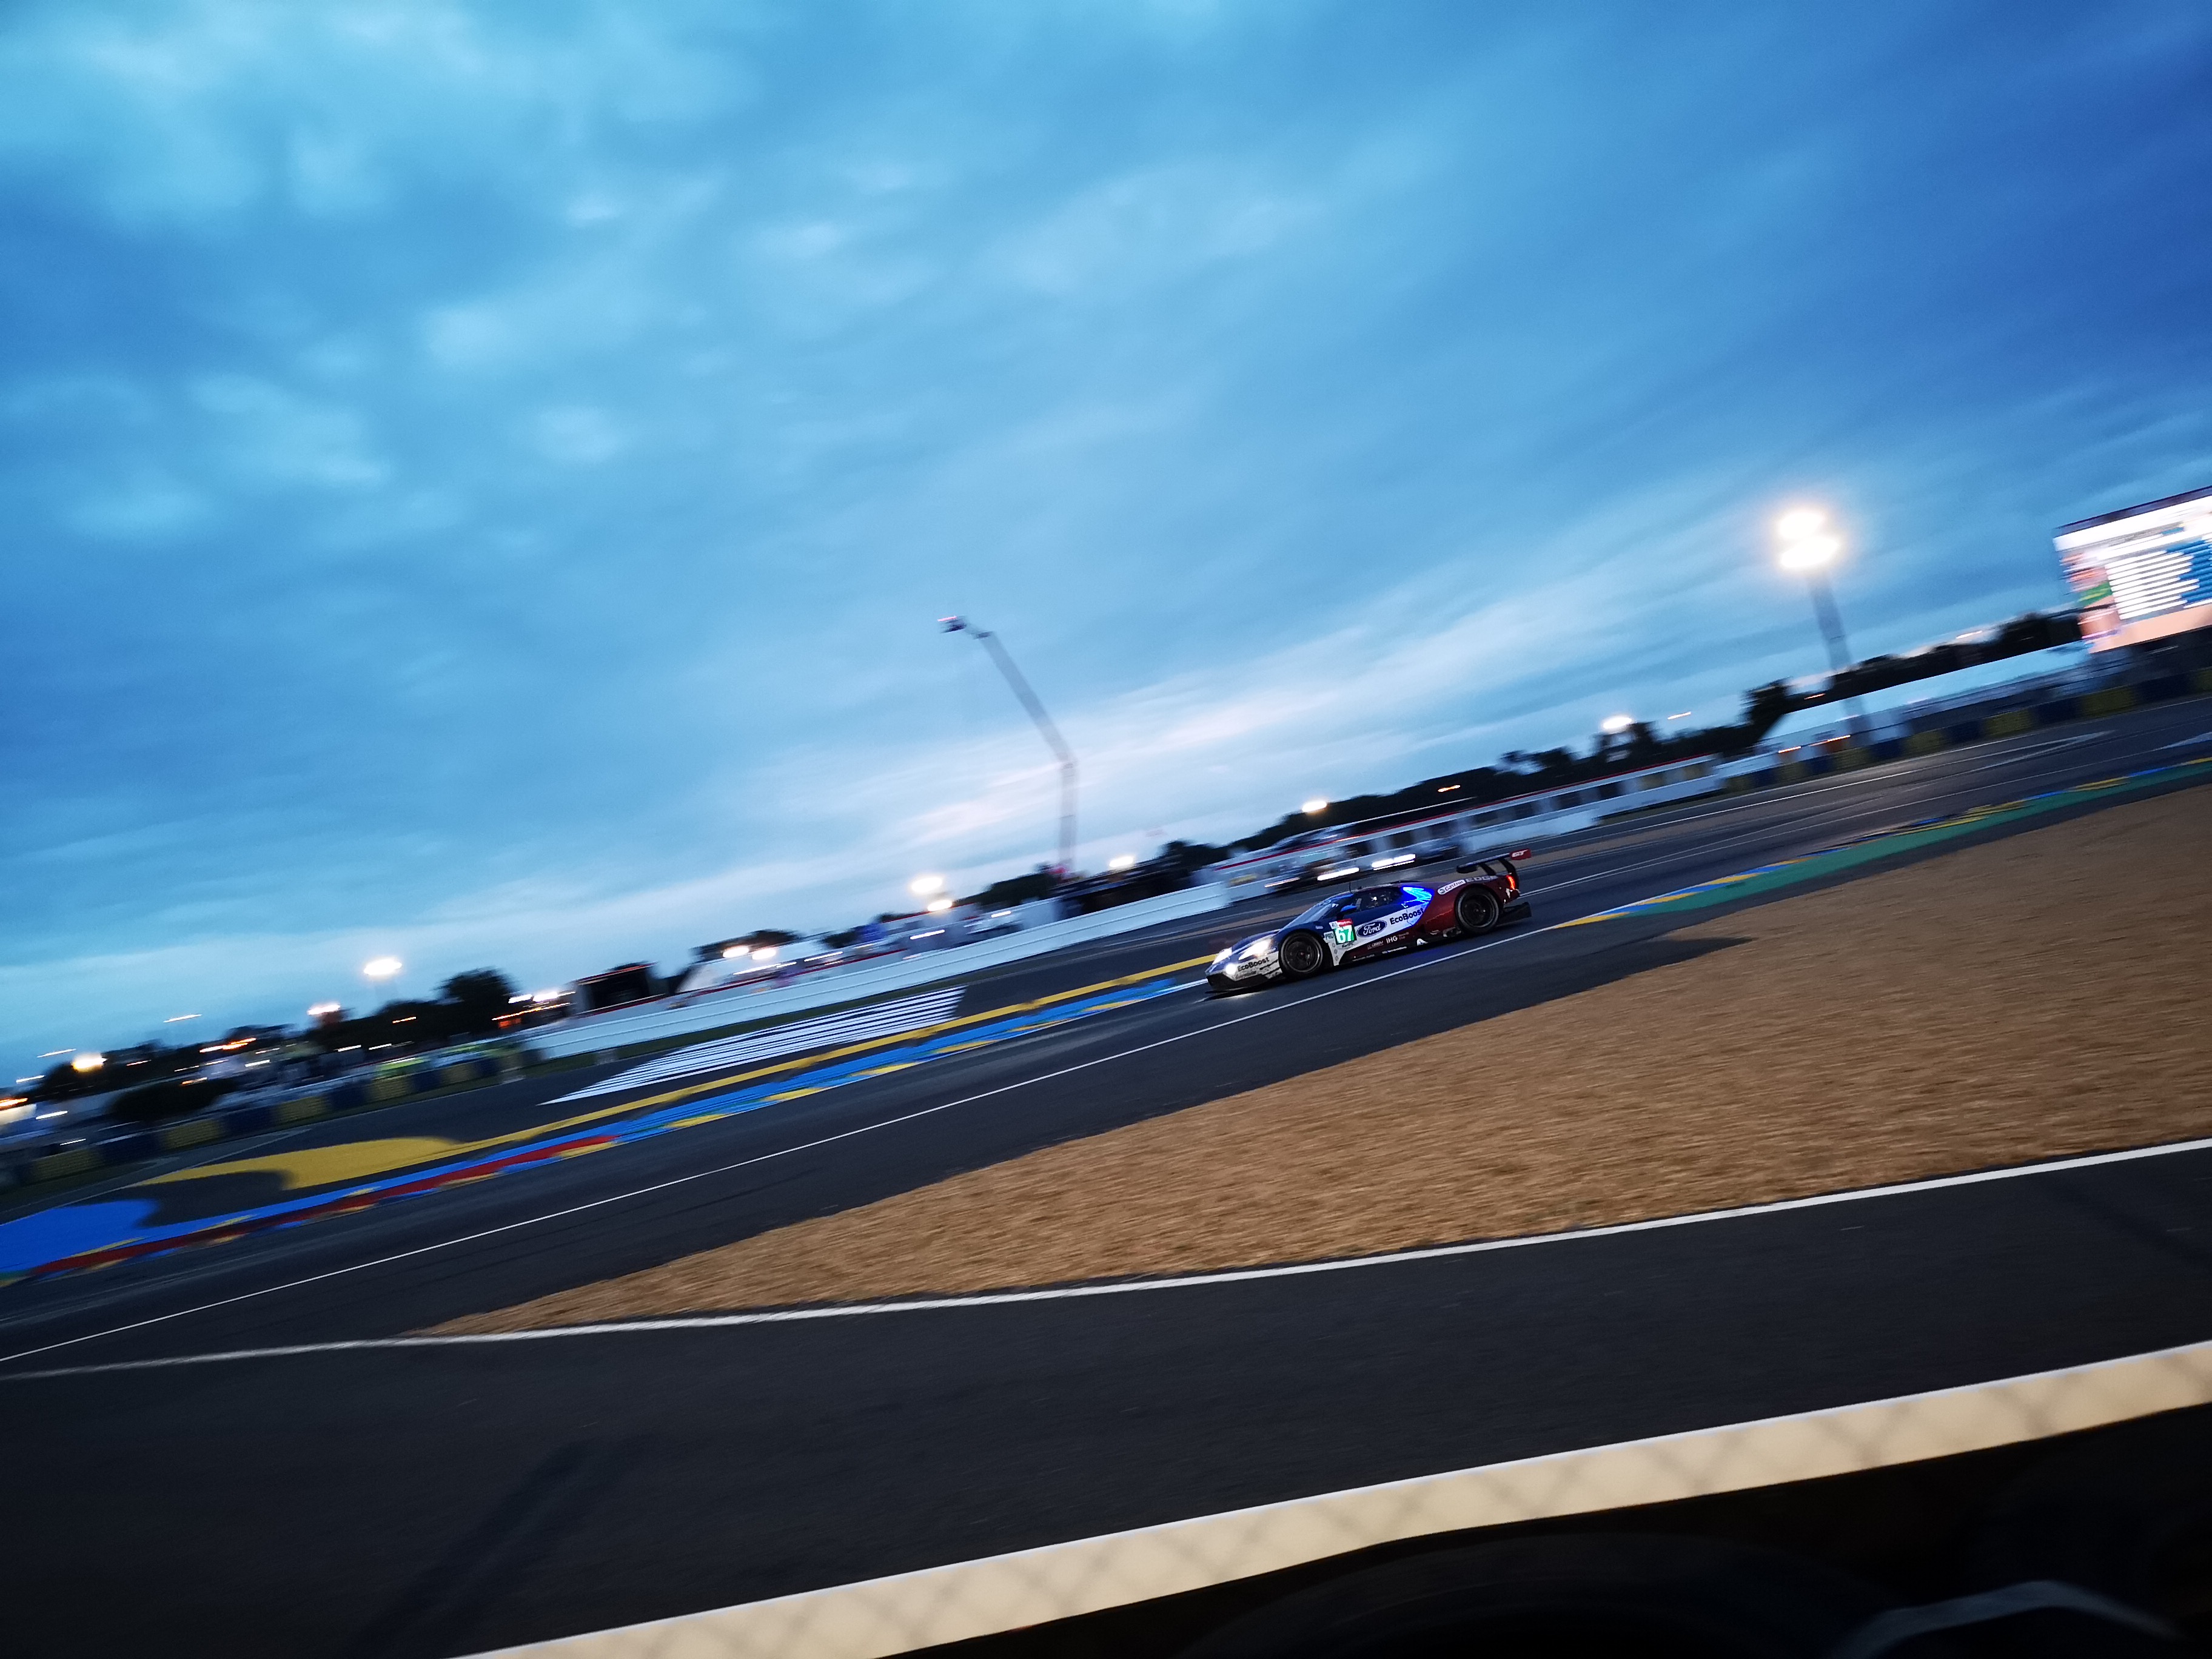 2018 Le Mans 24 Hours - Race